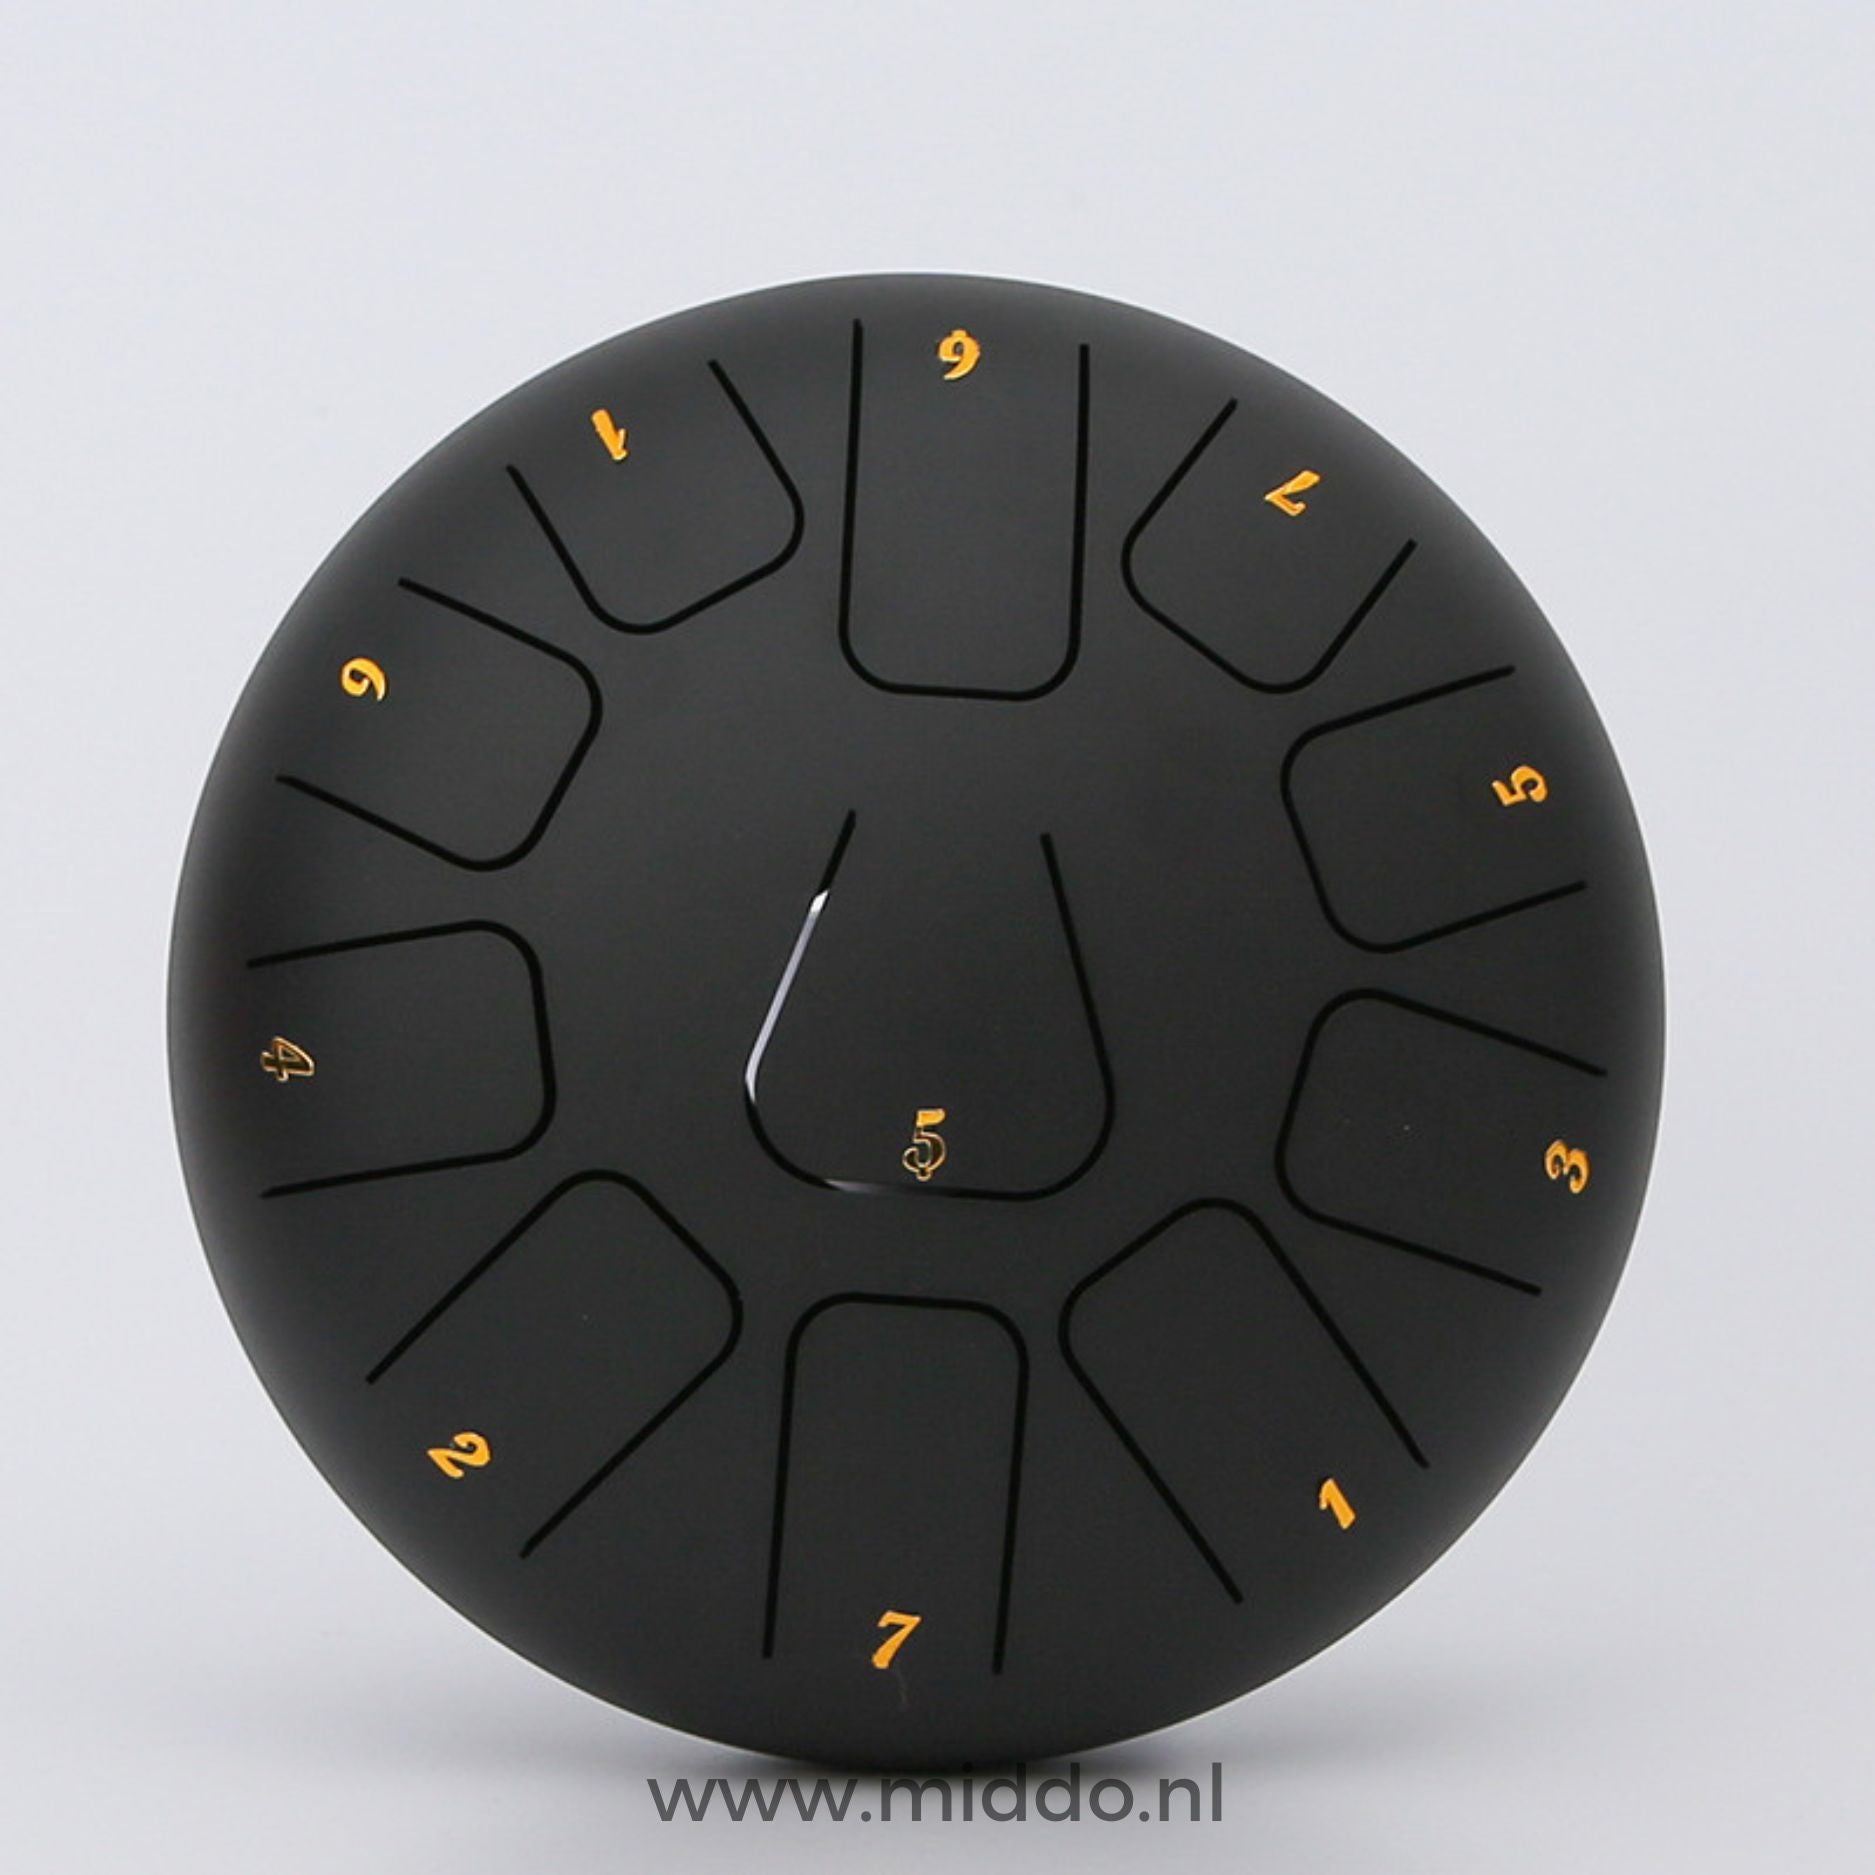 Zwarte steel tongue drum van 15 cm met cijfers